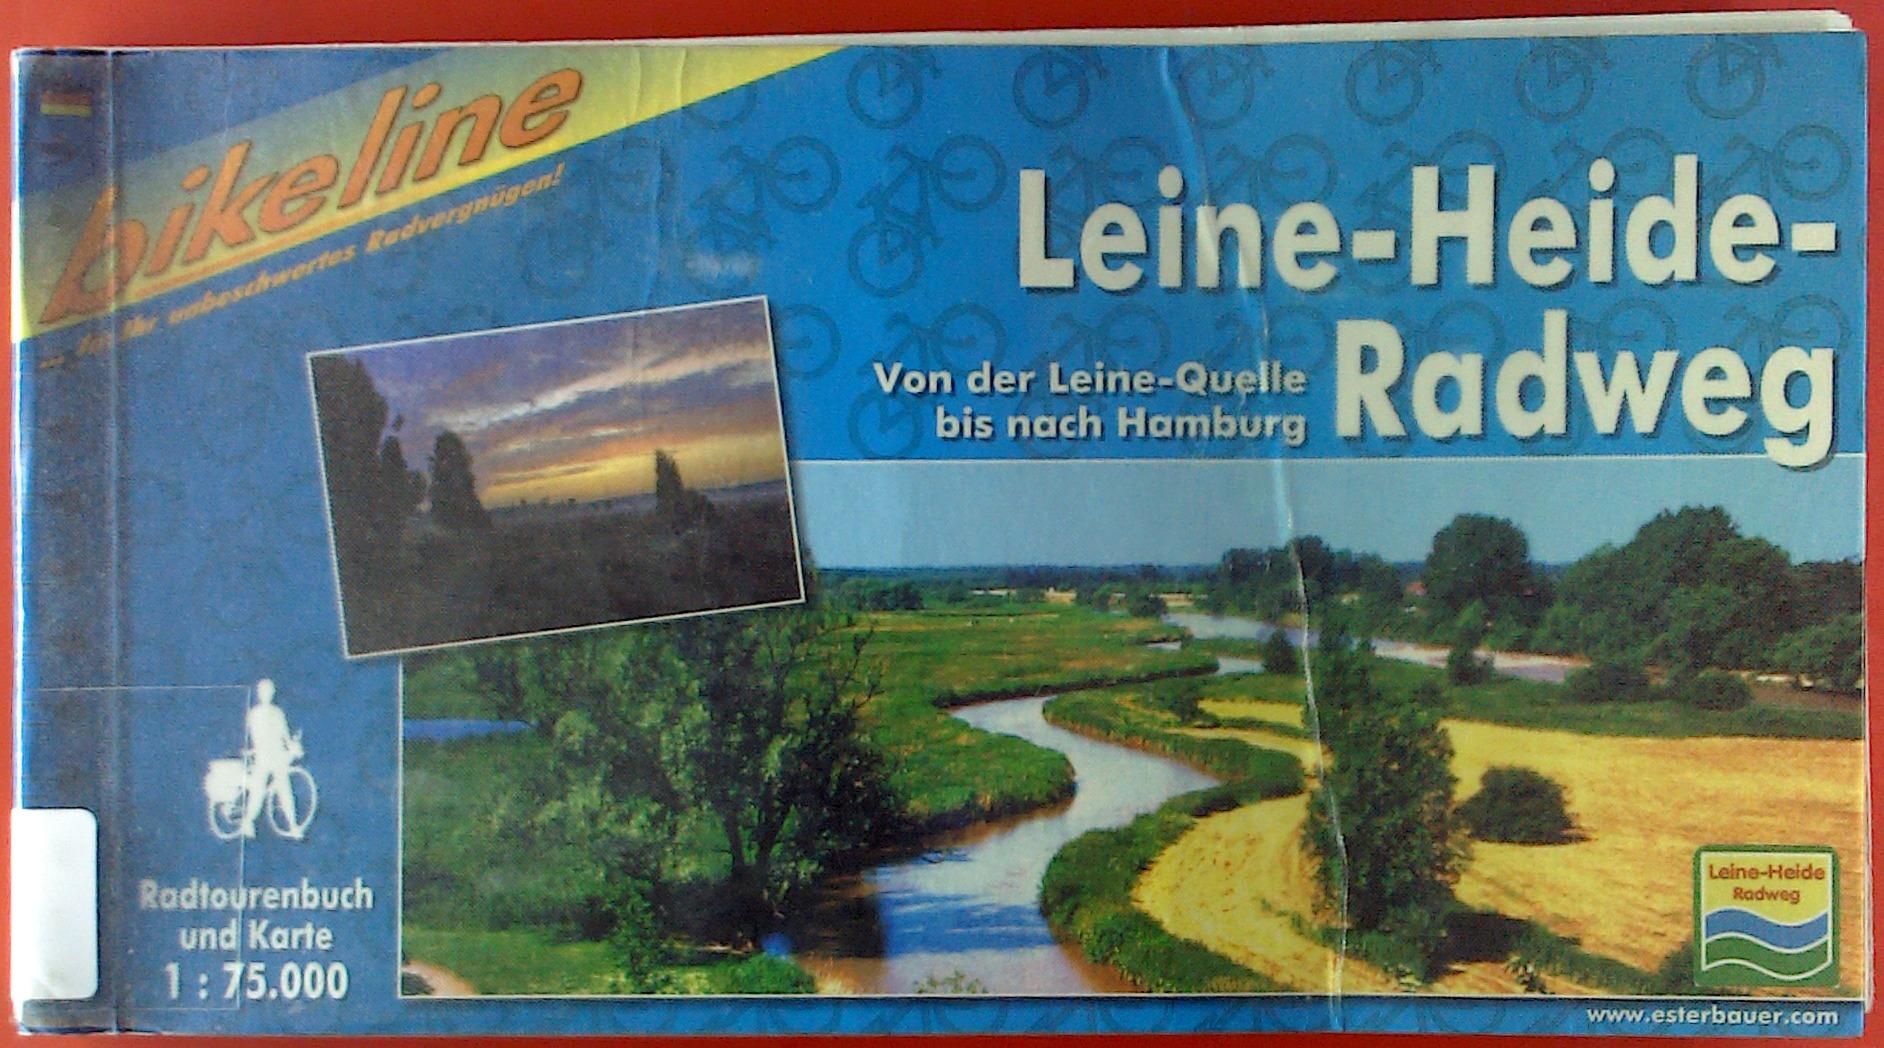 Leine-Heide-Radweg. Von der Leine-Quelle bis nach Hamburg. Radtourenbuch und Karte 1: 75000- - ohne Autorenangabe